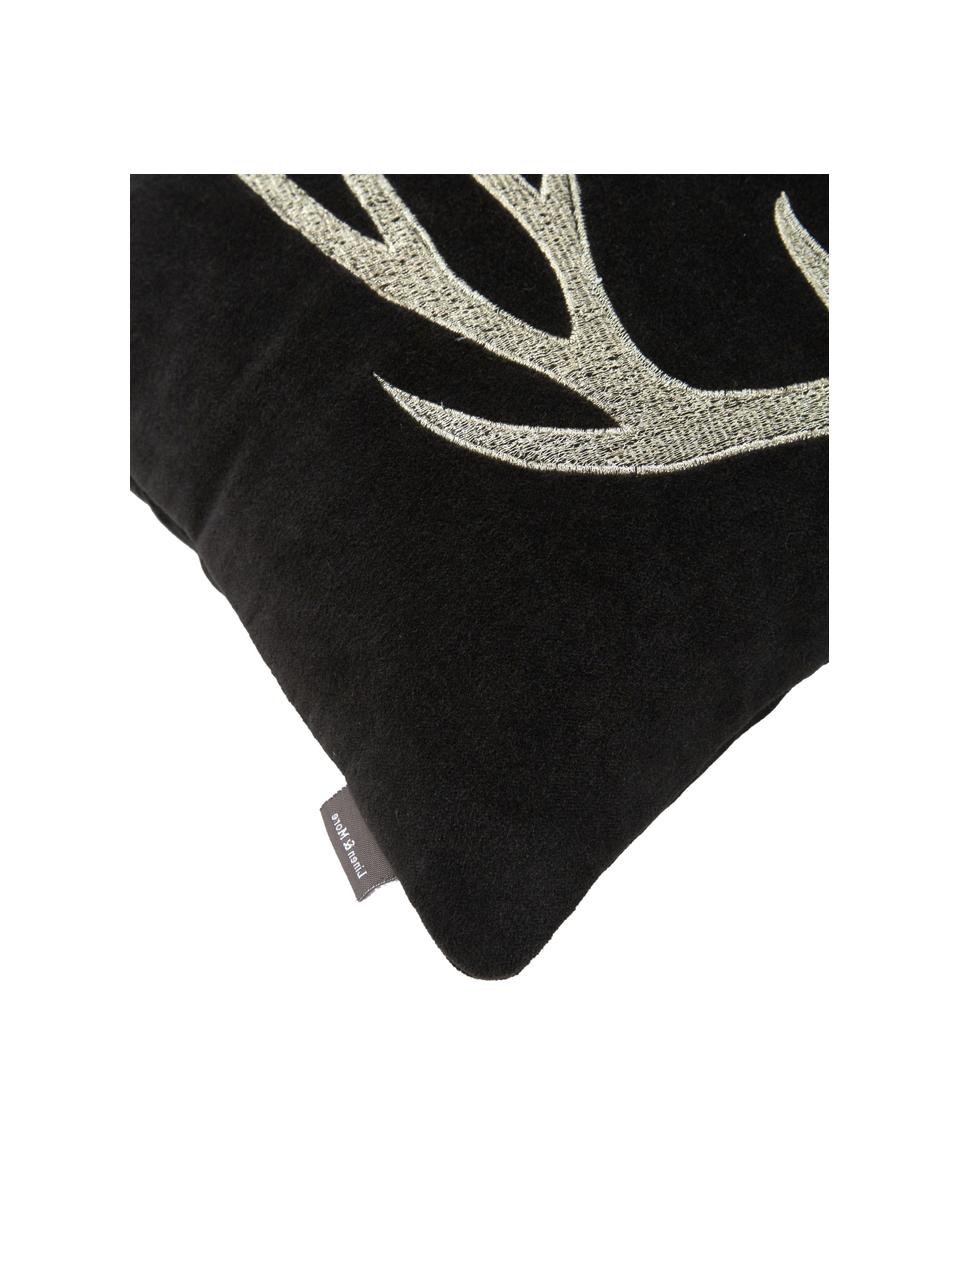 Poduszka z aksamitu z wypełnieniem Embroidered Antler, Tapicerka: 100% aksamit bawełniany, Czarny, beżowy, S 30 x D 50 cm